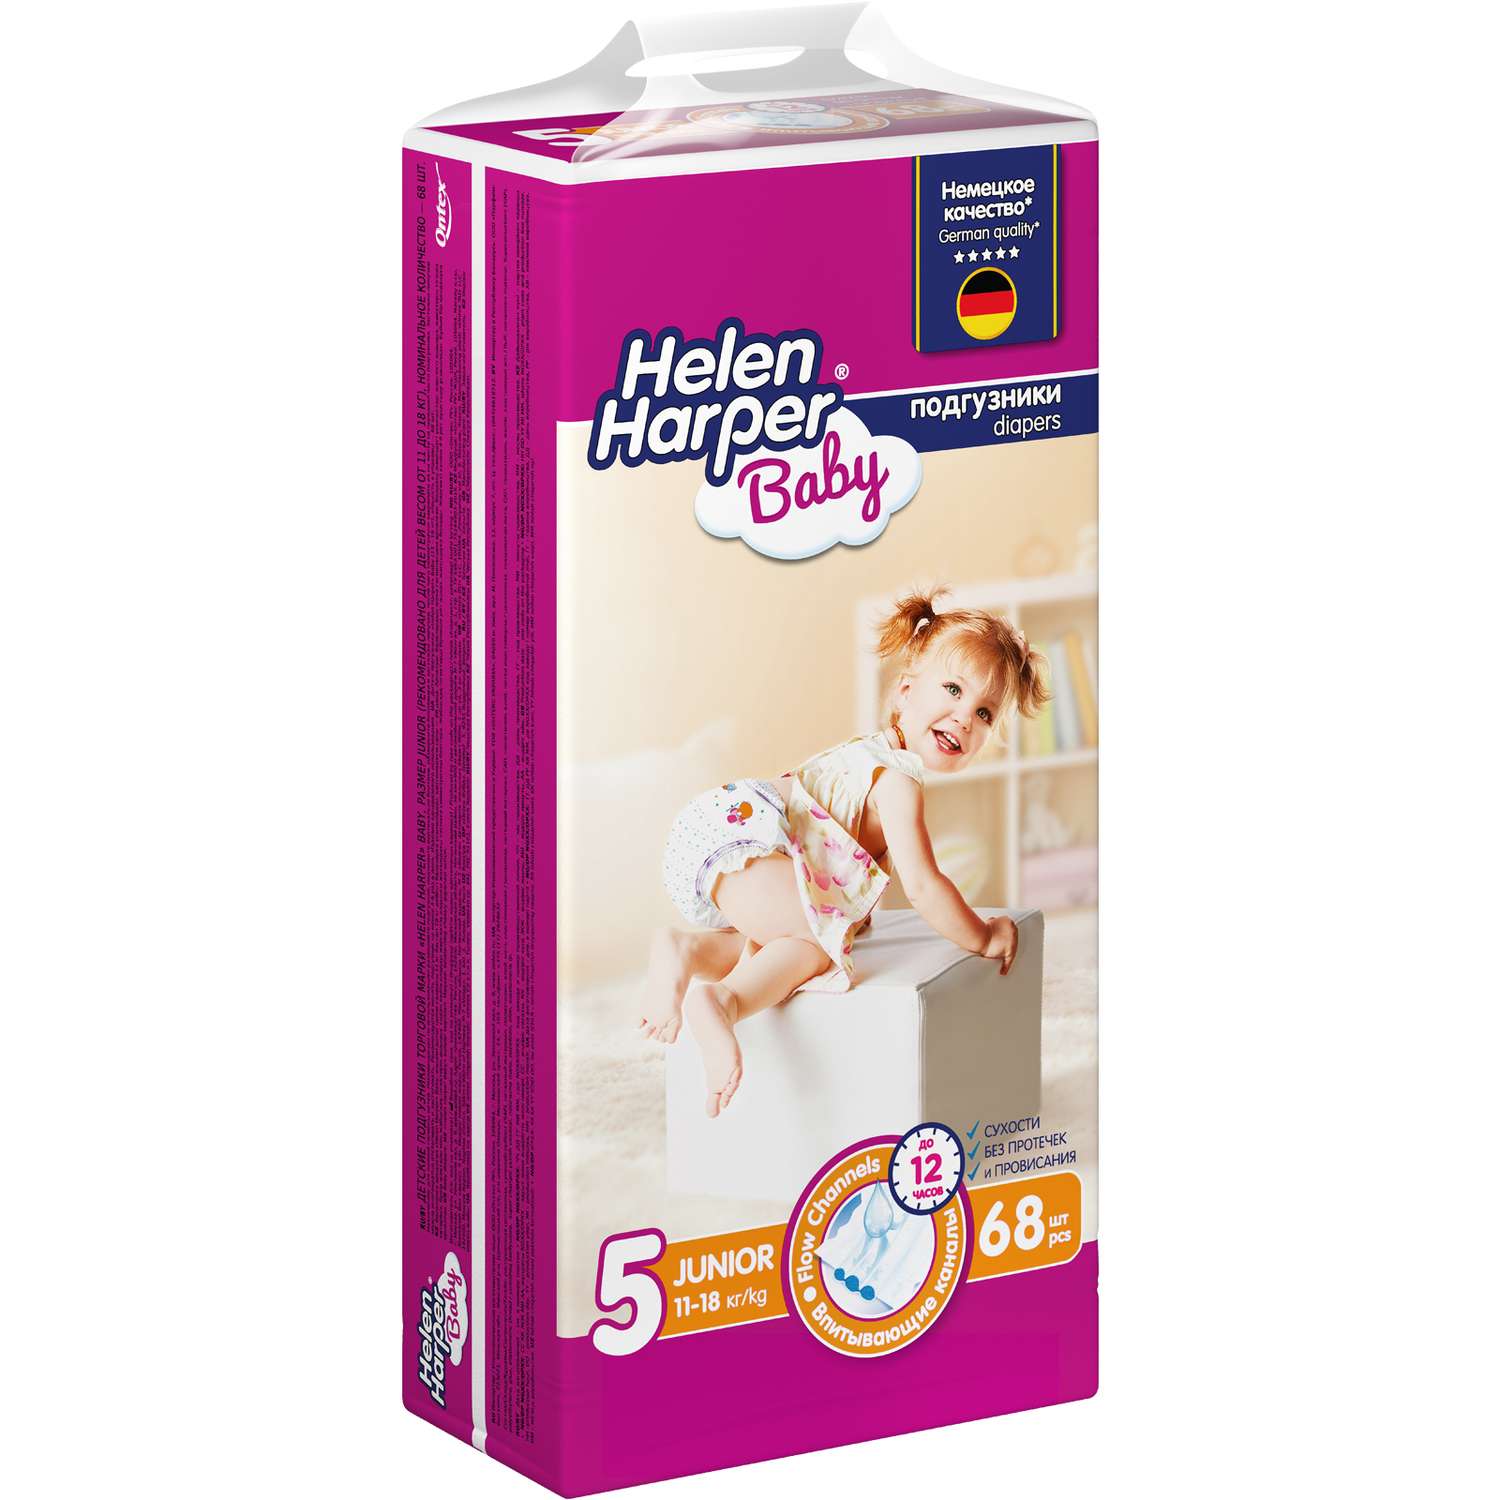 Подгузники детские Helen Harper Baby размер 5 Junior 11-18 кг 68 шт. - фото 2